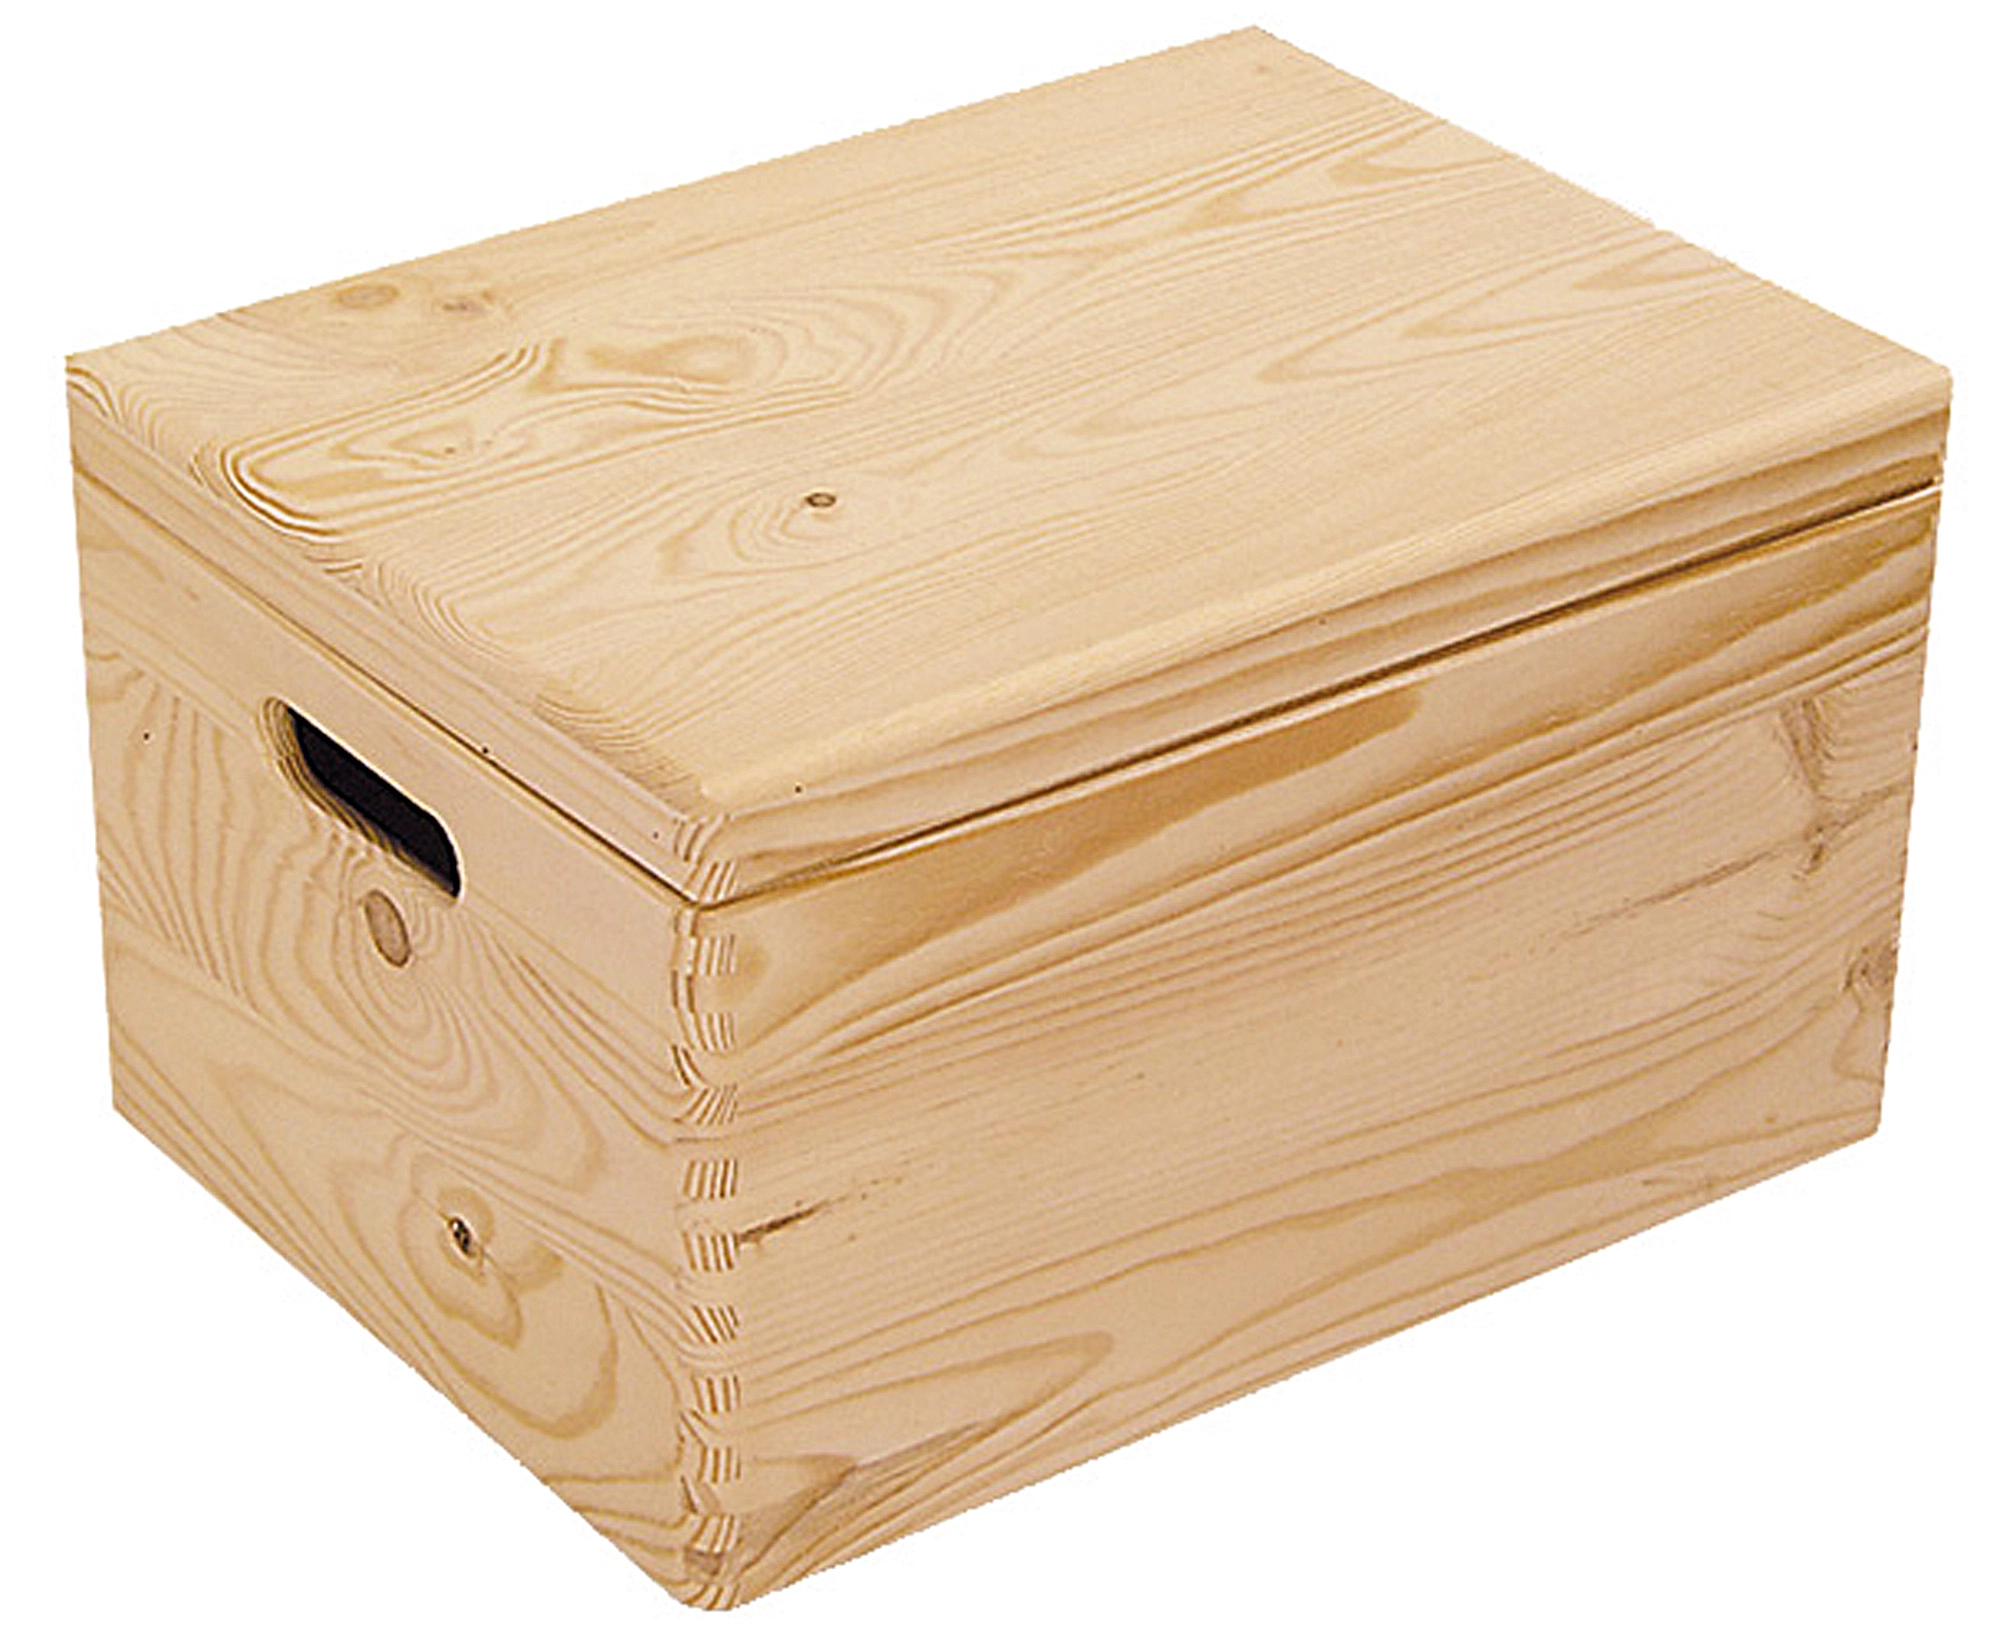 Aufbewahrungsbox mit Deckel 56L Boxen Aufbewahrung Ordnungsboxen